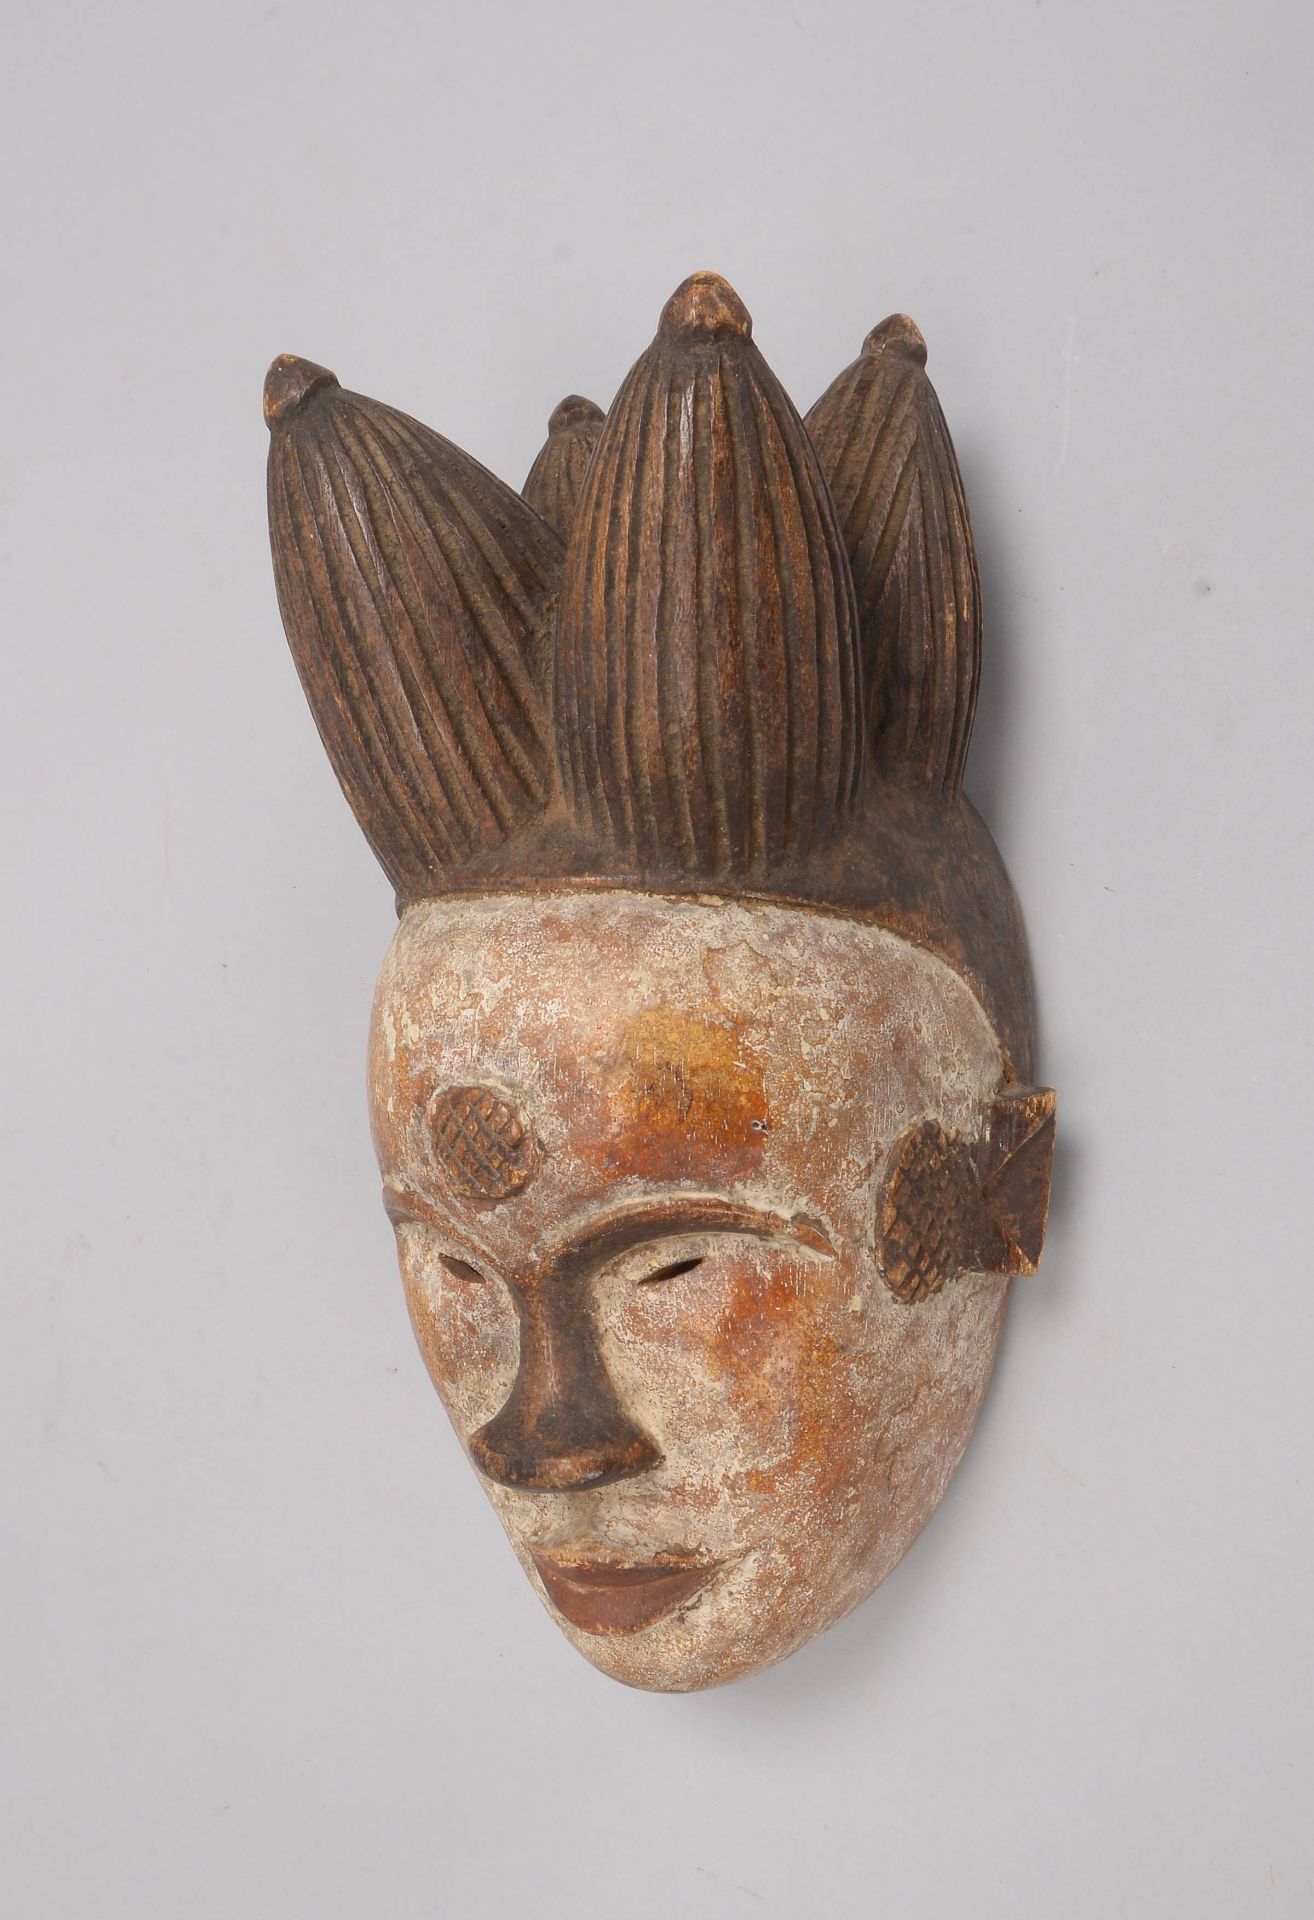 Ritualmaske (Kamerun/Afrika), Holz handgeschnitzt, mit Resten von weißer Fassung; Länge 31 cm